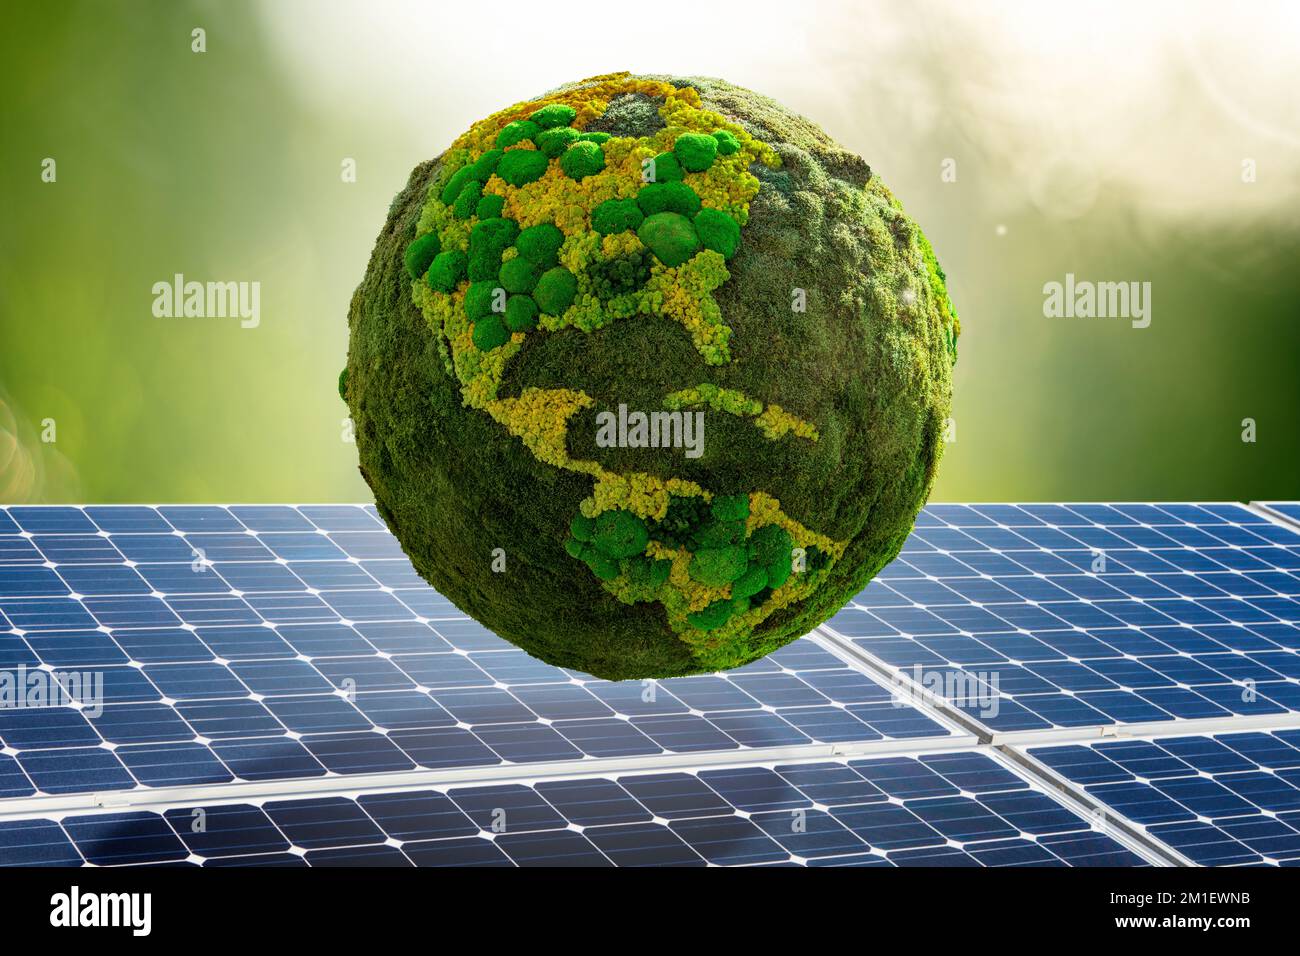 Grüner Planet Erde aus natürlichem Moos auf dem Hintergrund von Solarpaneelen. Symbol für nachhaltige Entwicklung und erneuerbare Energien Stockfoto